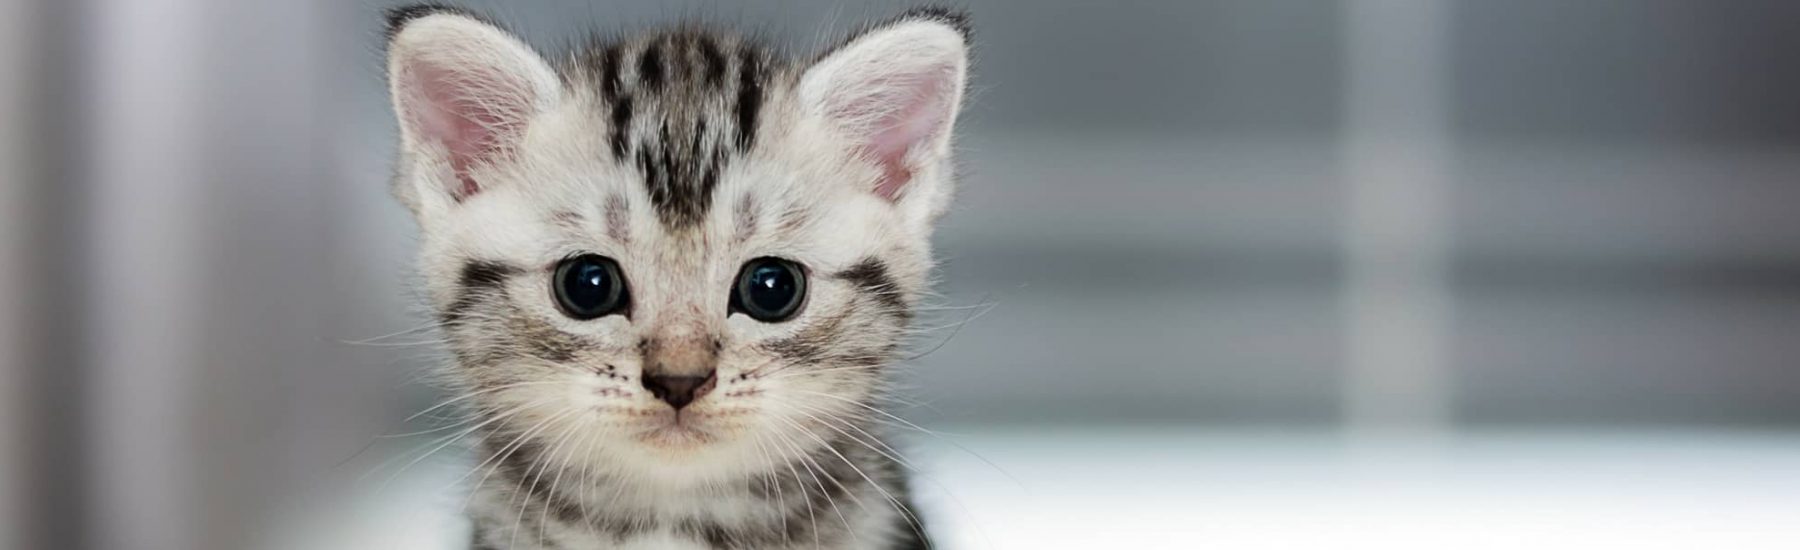 catservice-kitty